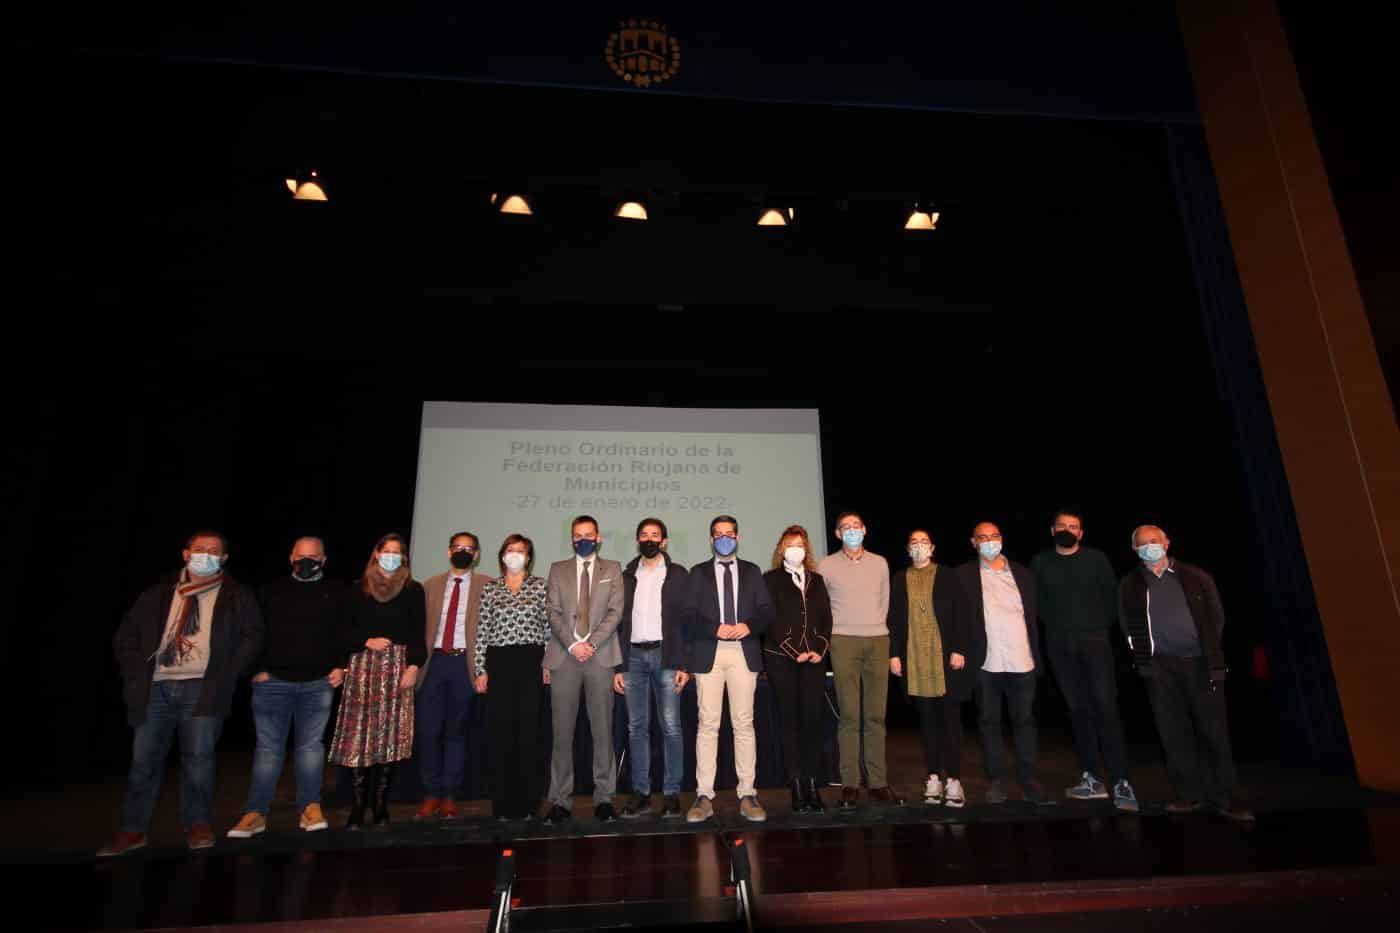 Osés reclama "protagonismo" para los municipios en la recuperación económica y social de La Rioja 2